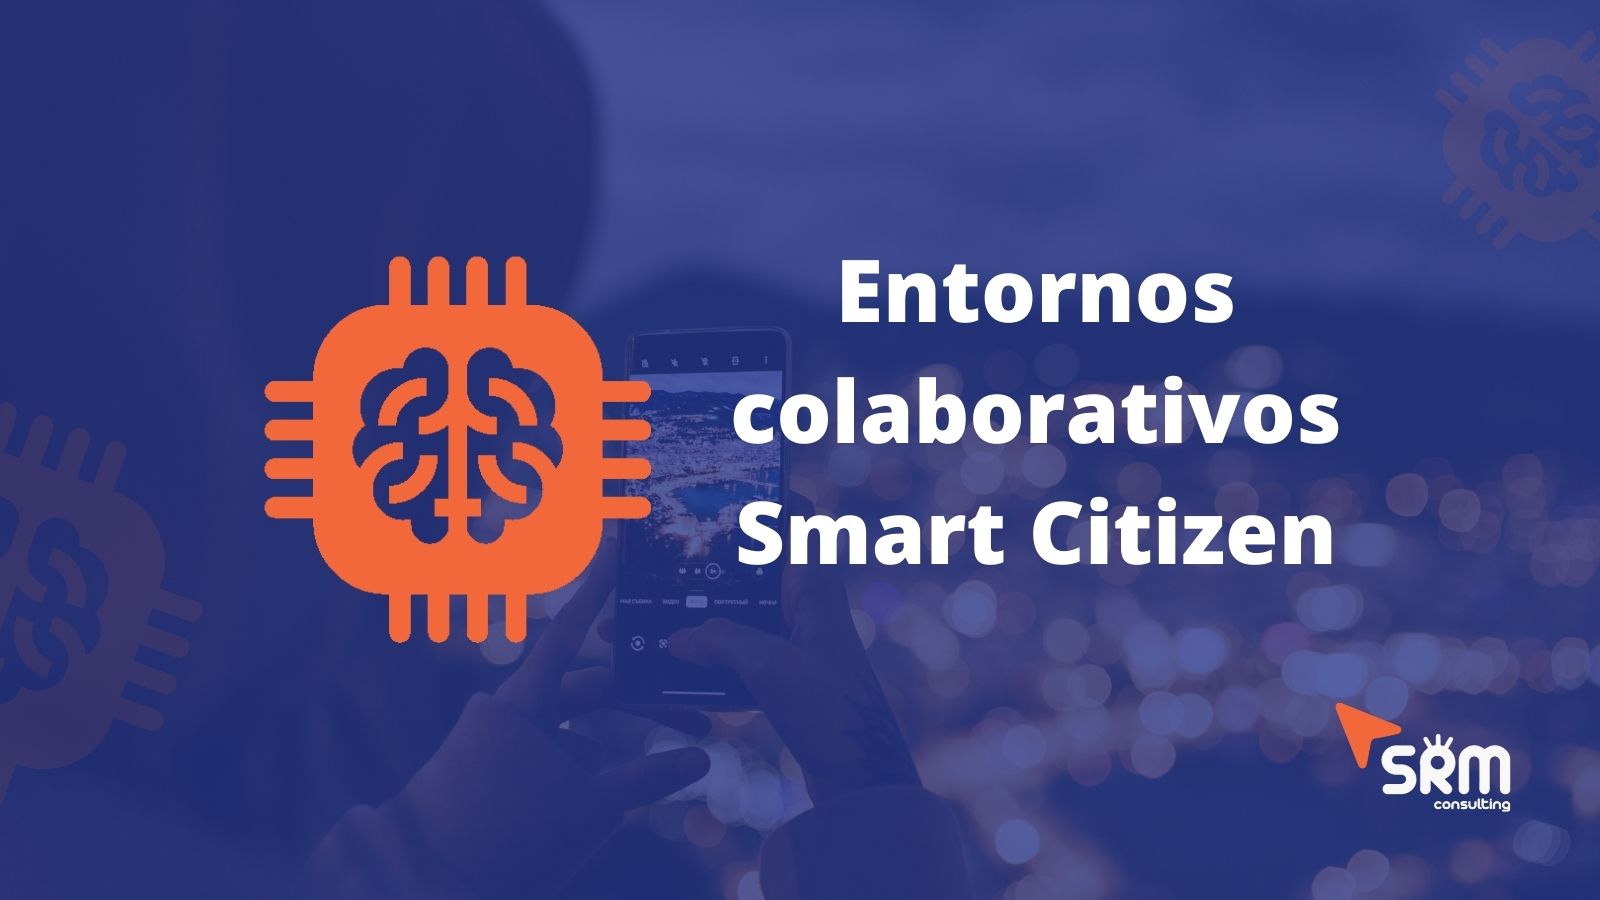 La importancia de los entornos colaborativos Smart Citizen